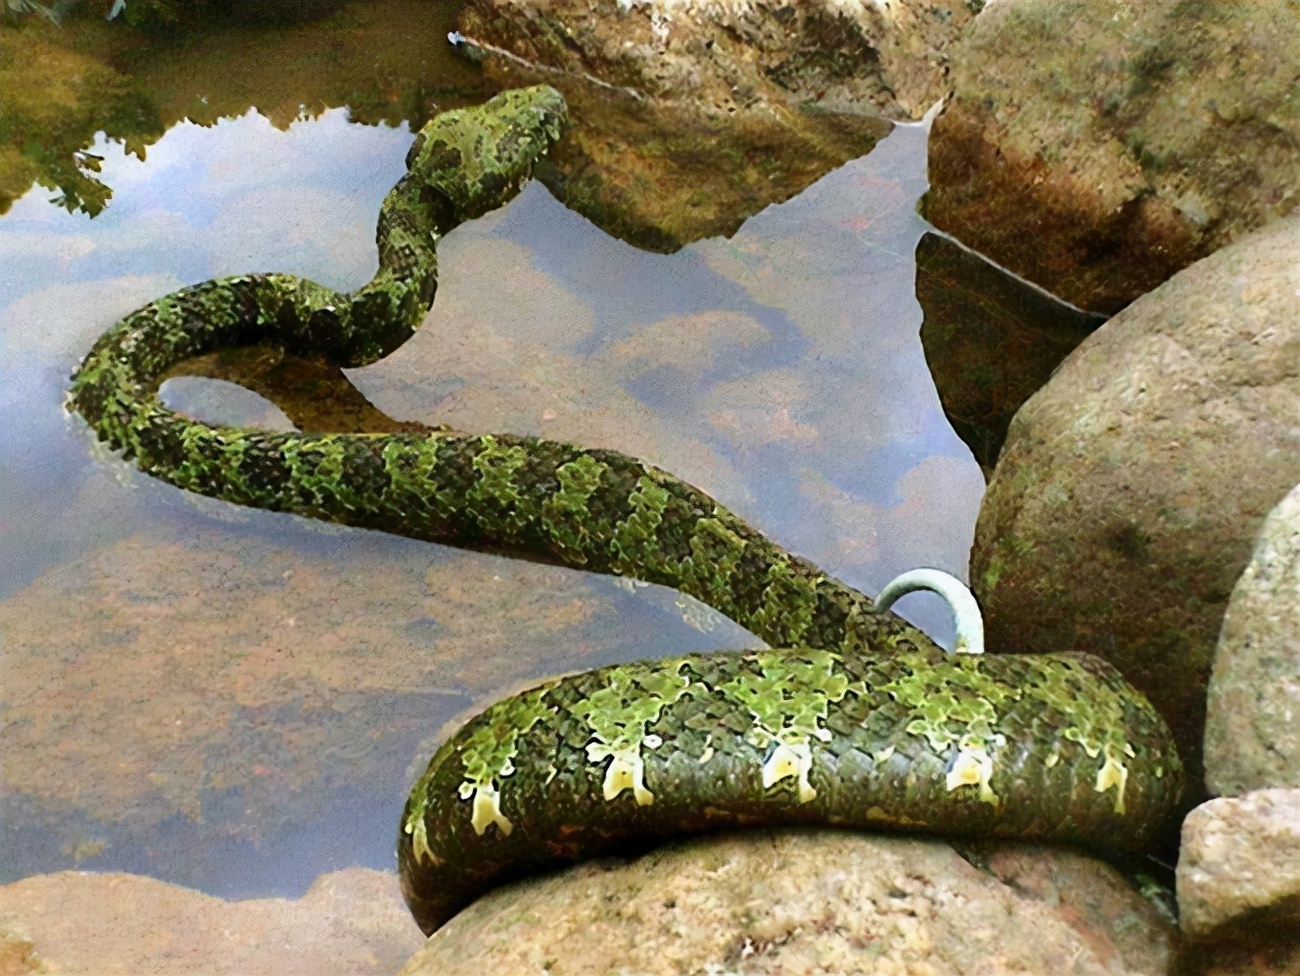 世界上最贵的毒蛇——莽山烙铁头蛇莽山烙铁头蛇最初被发现是在湖南省